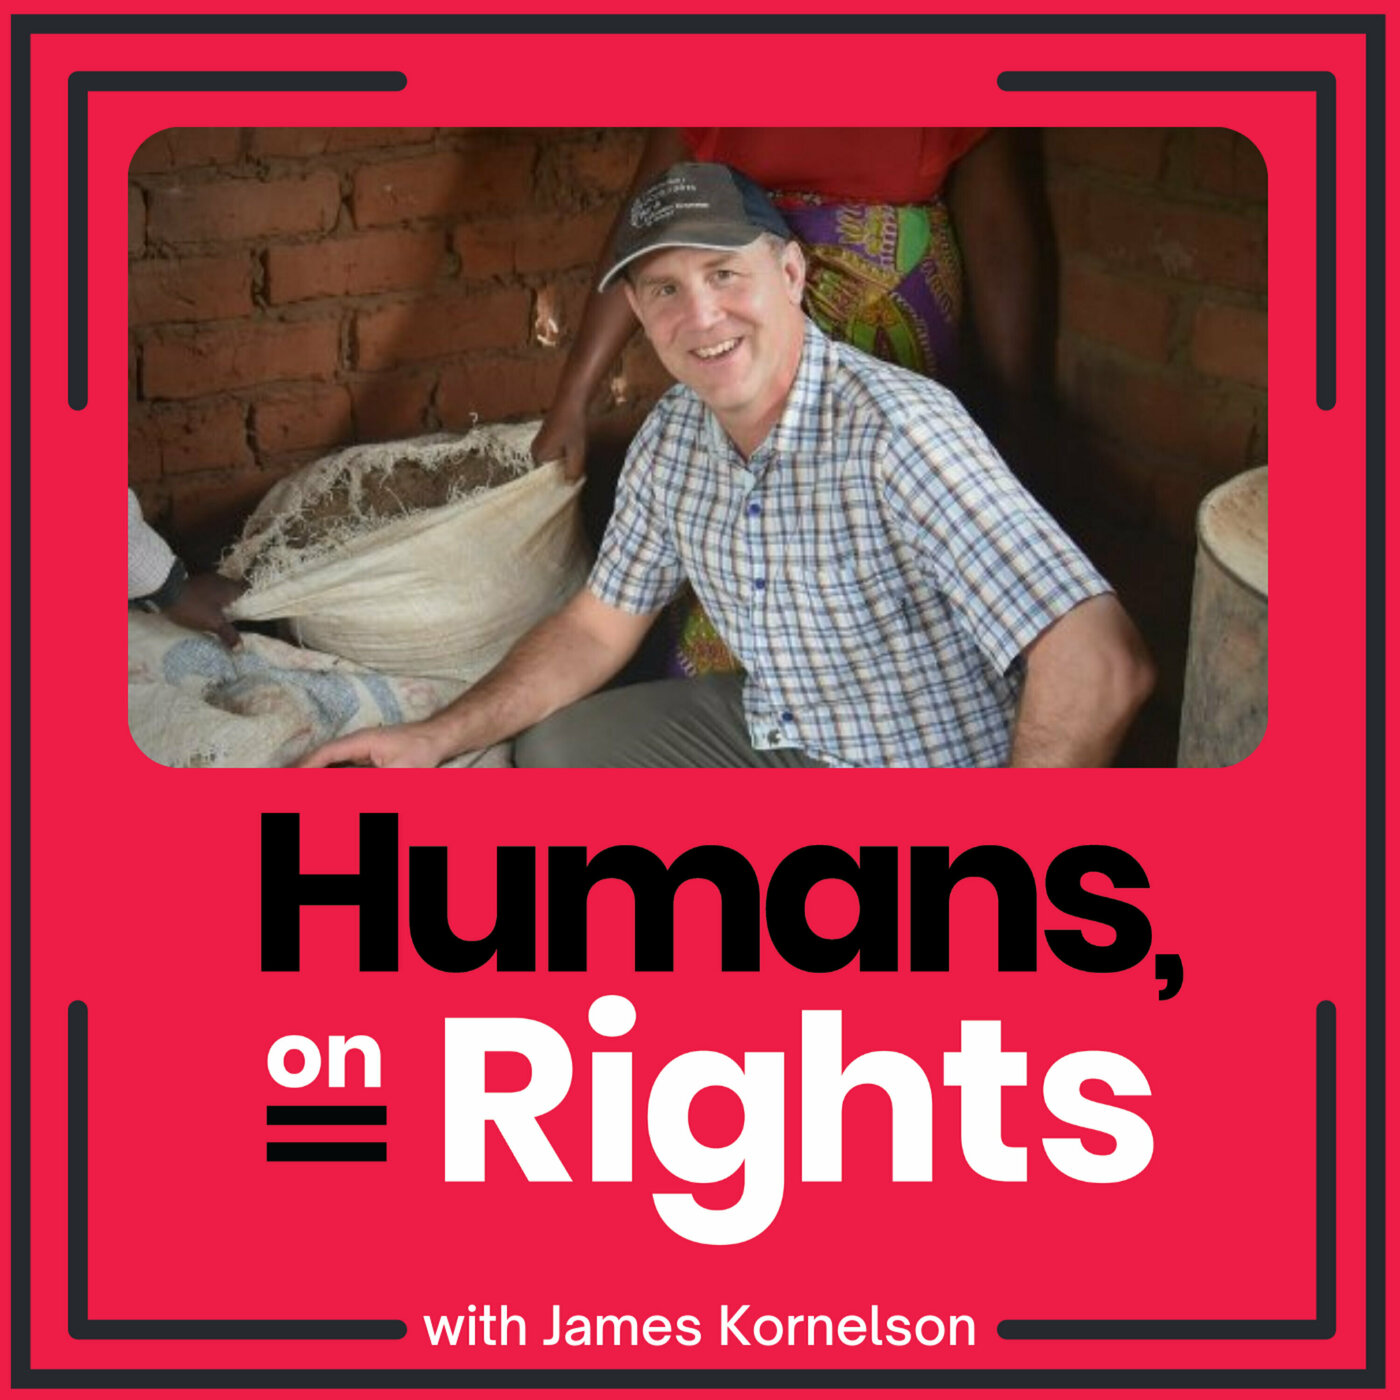 James Kornelson: How Do You Define Hunger?